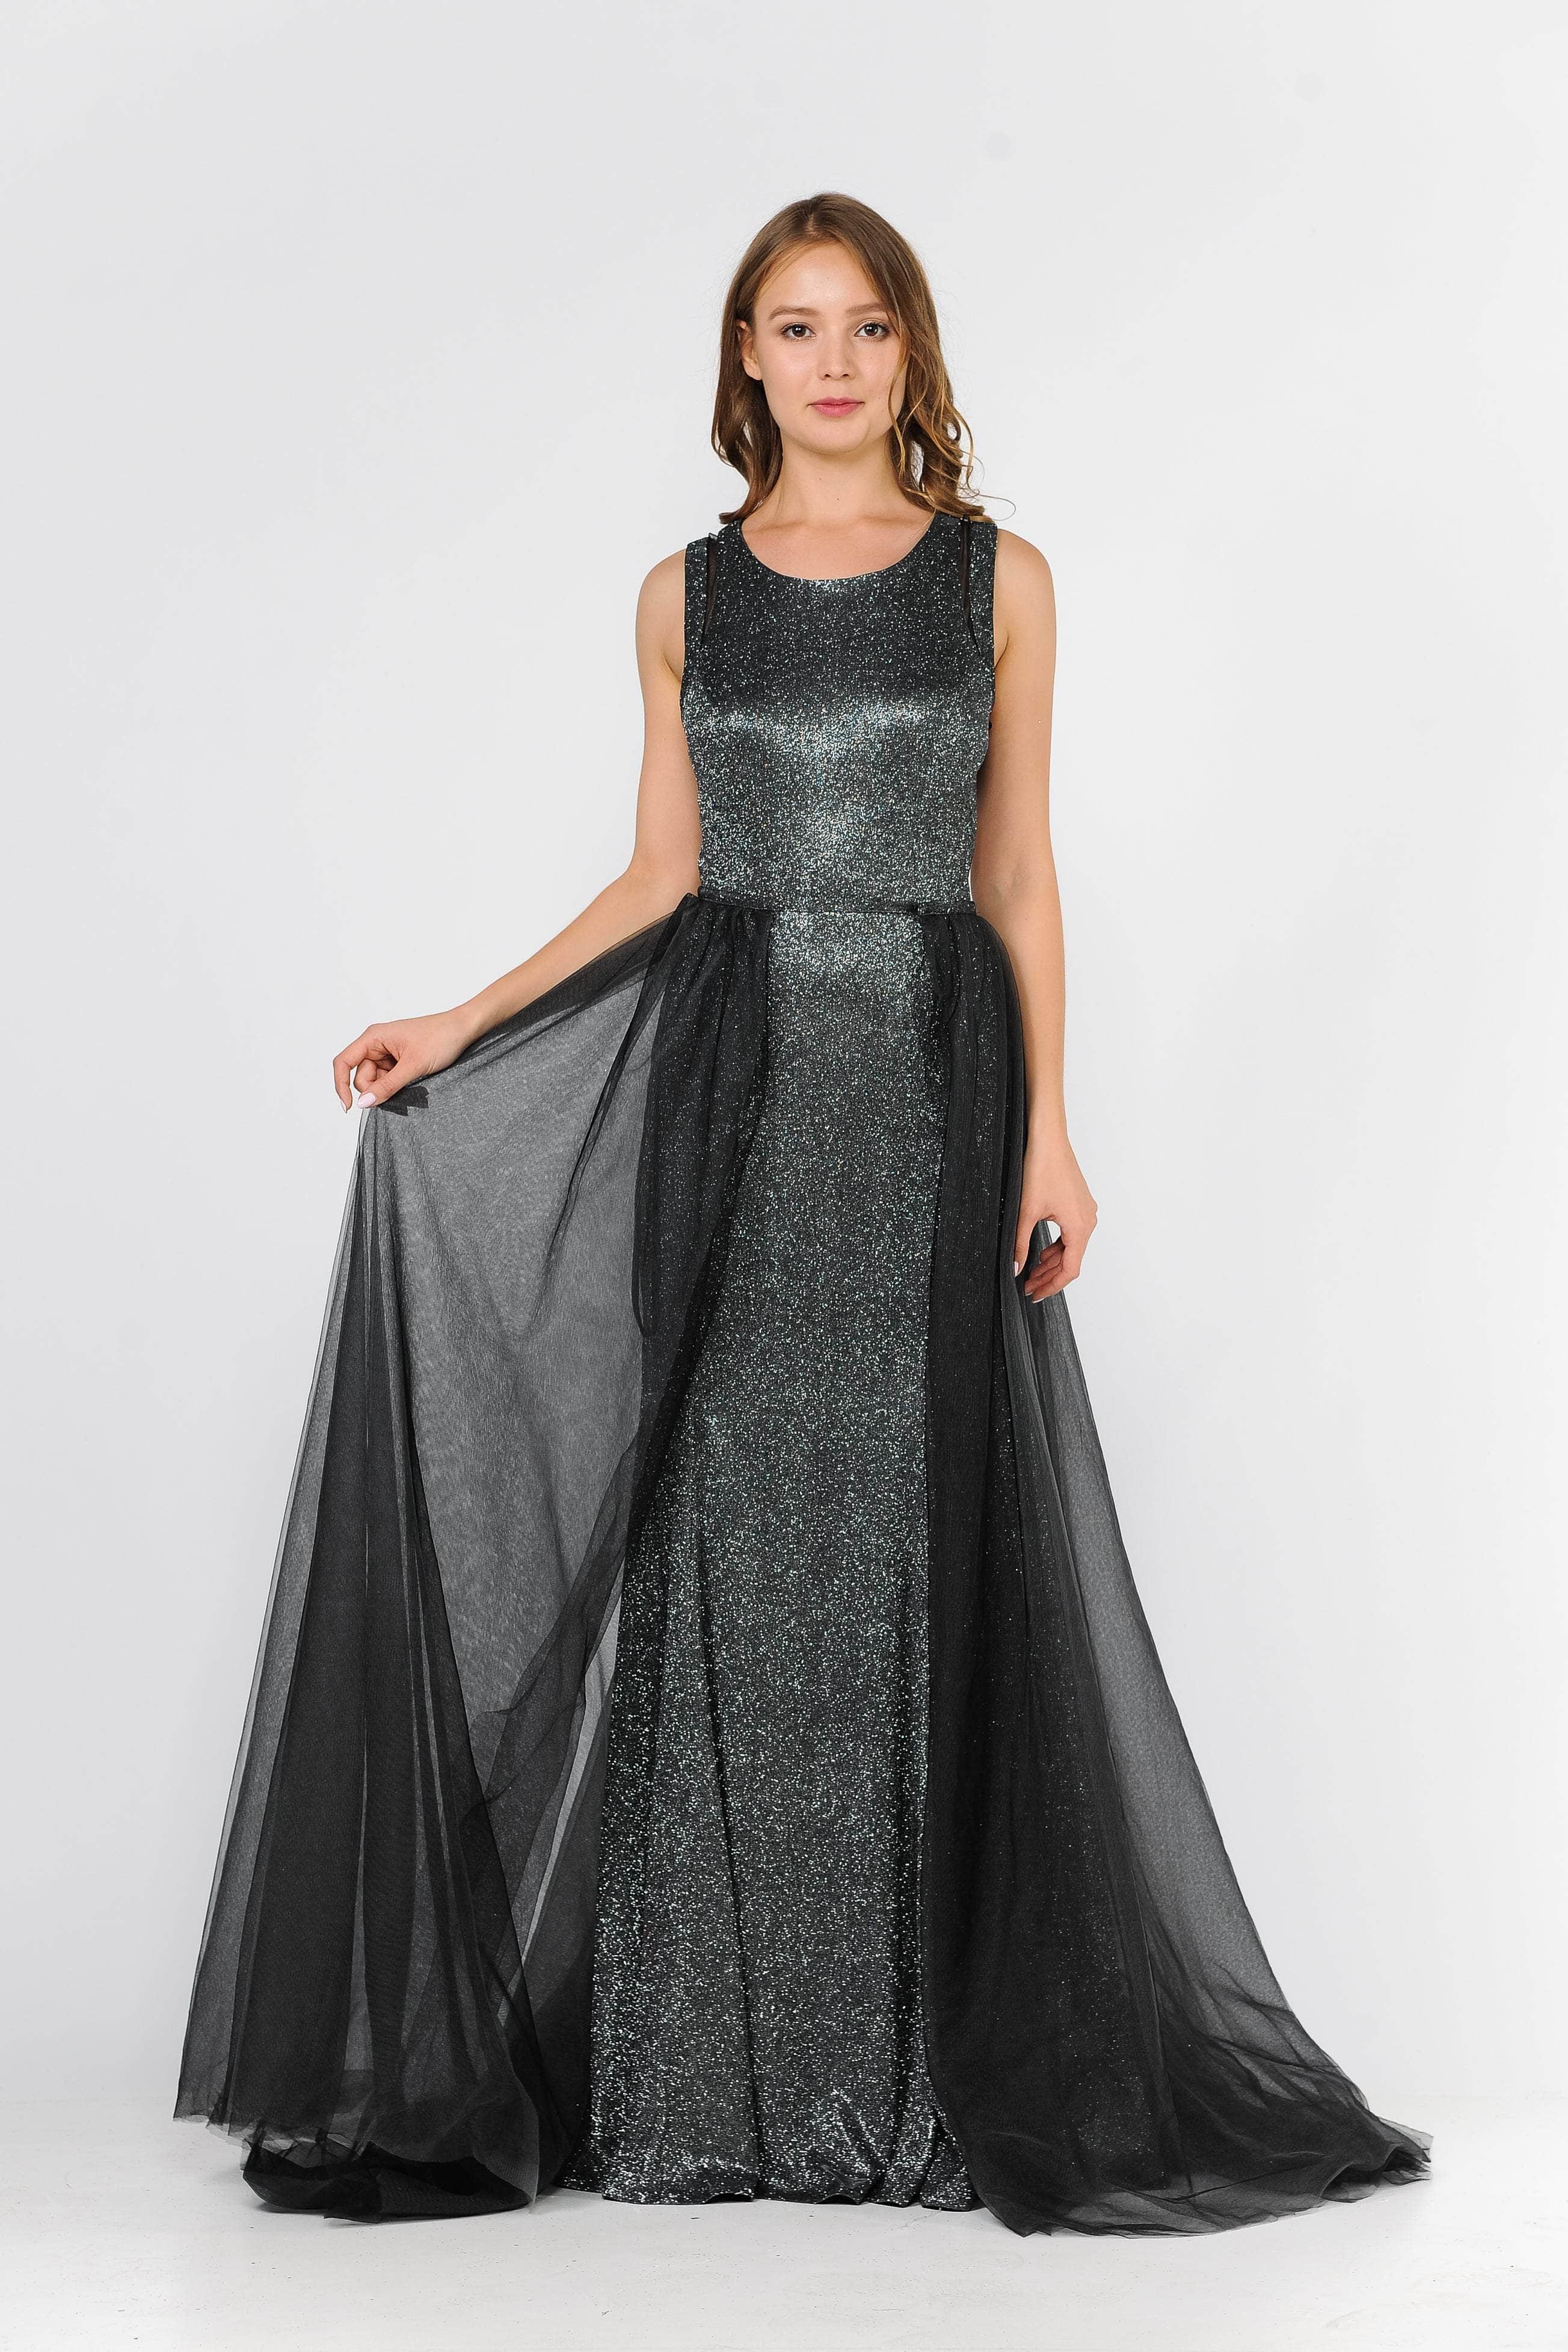 Poly USA 8342 - Glitter Knit Mermaid Prom Dress
